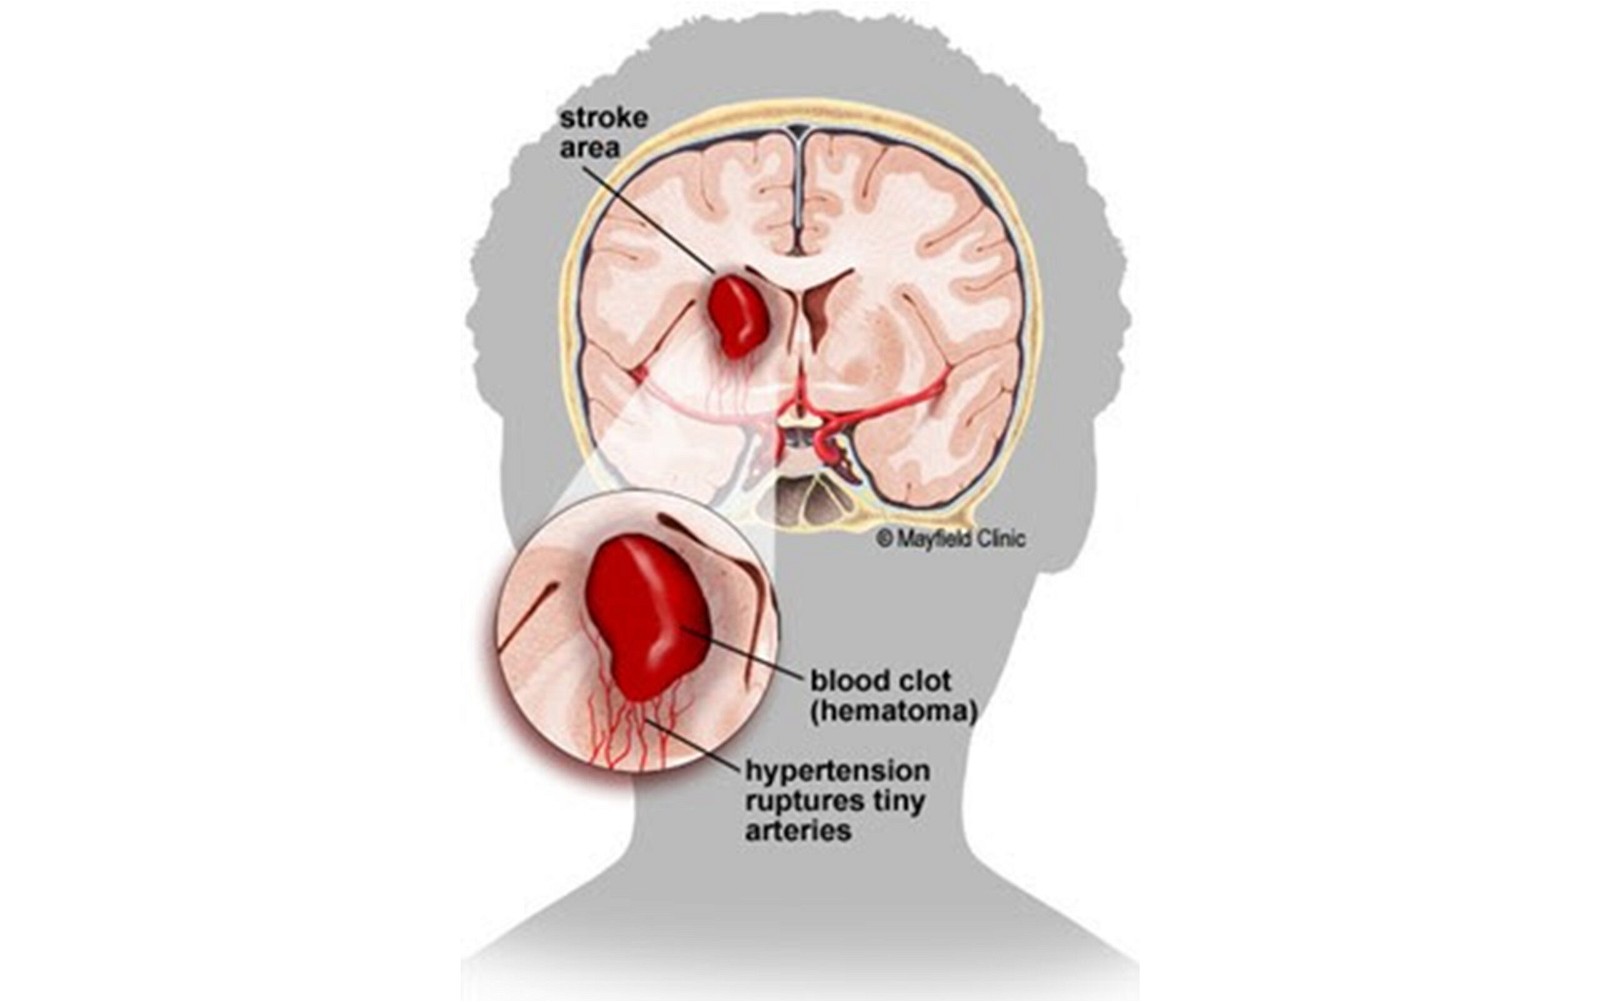 Xuất huyết não thường do vỡ các động mạch nhỏ trong mô não (trái). Khi máu đông lại, cục máu đông hình thành gây tăng áp lực đè ép lên nhu mô não